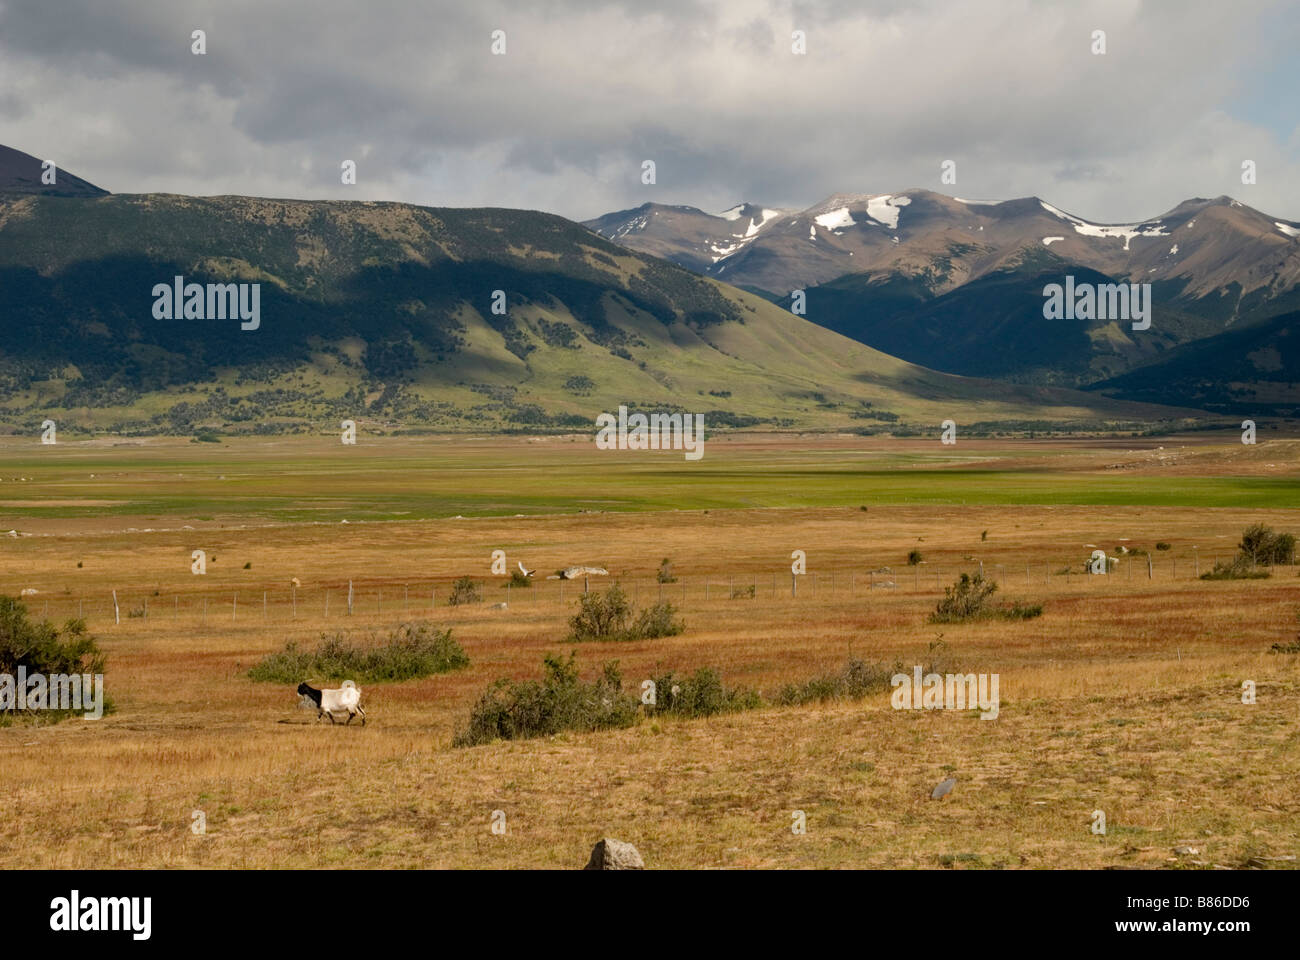 Landscape of Parque Nacional Los Glaciares, Argentina Stock Photo